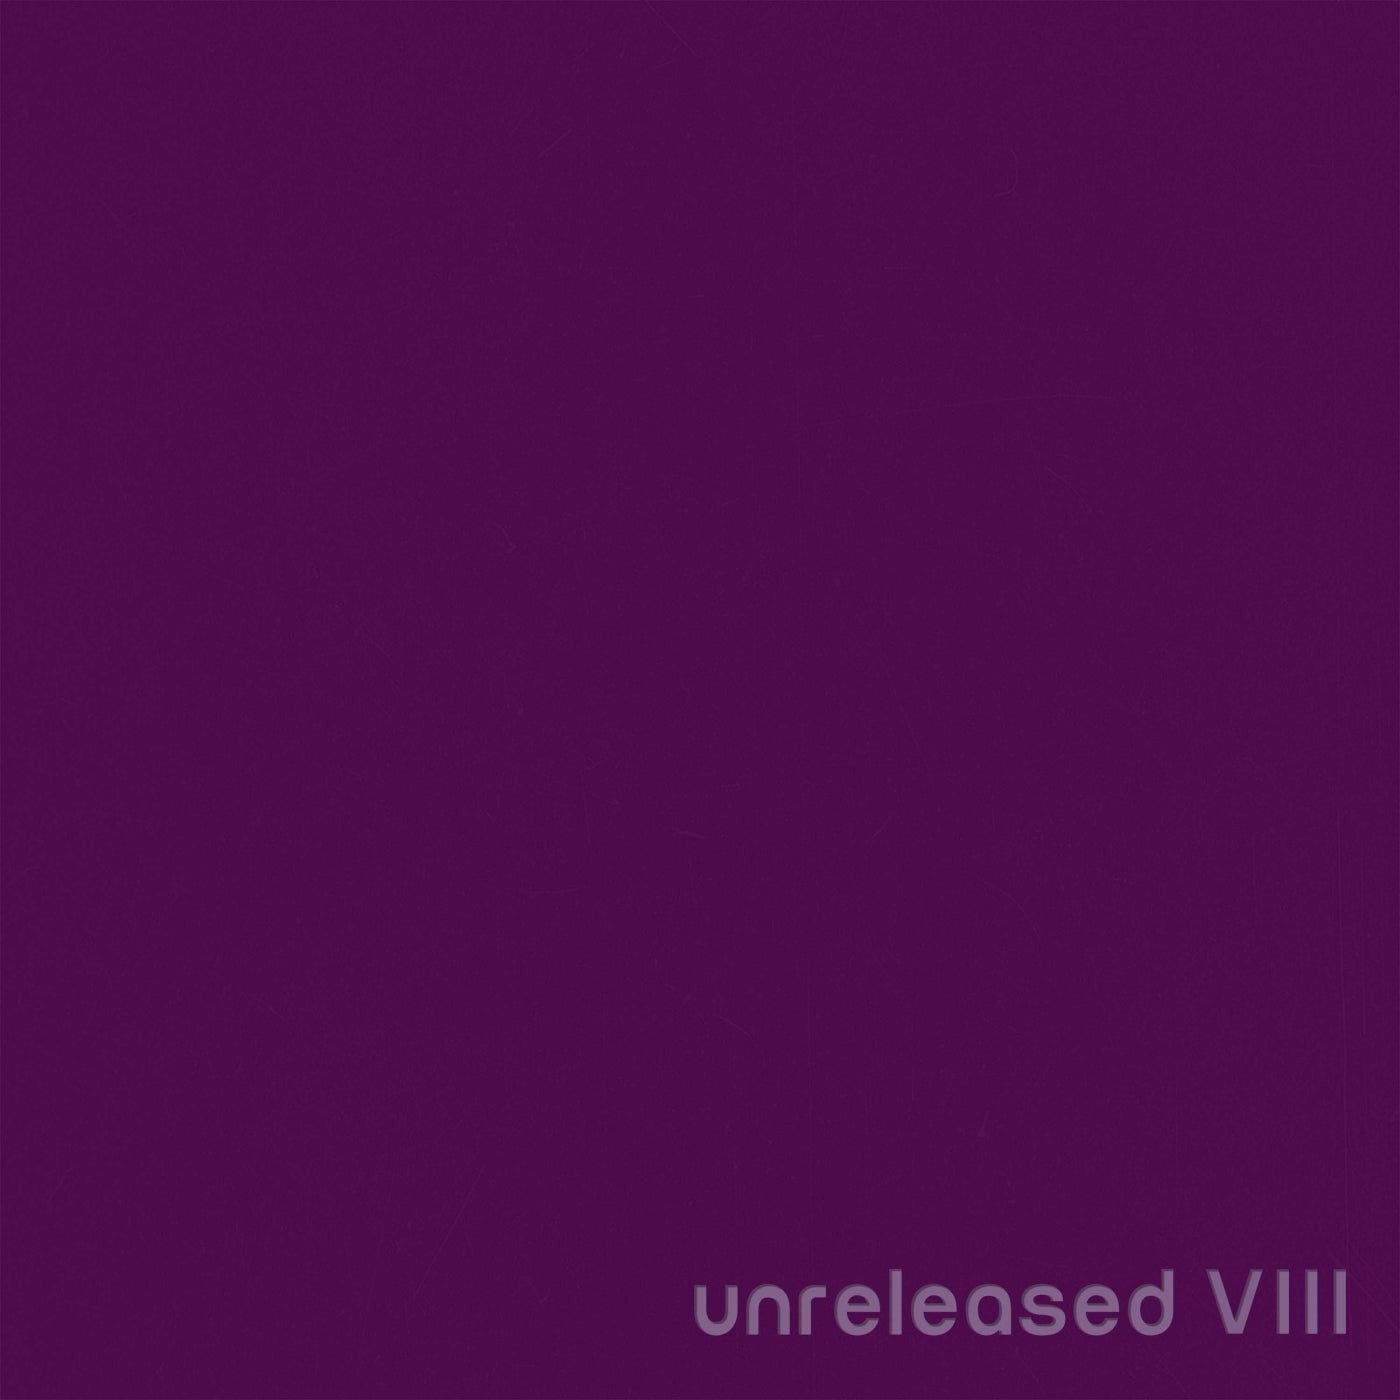 Unreleased VIII